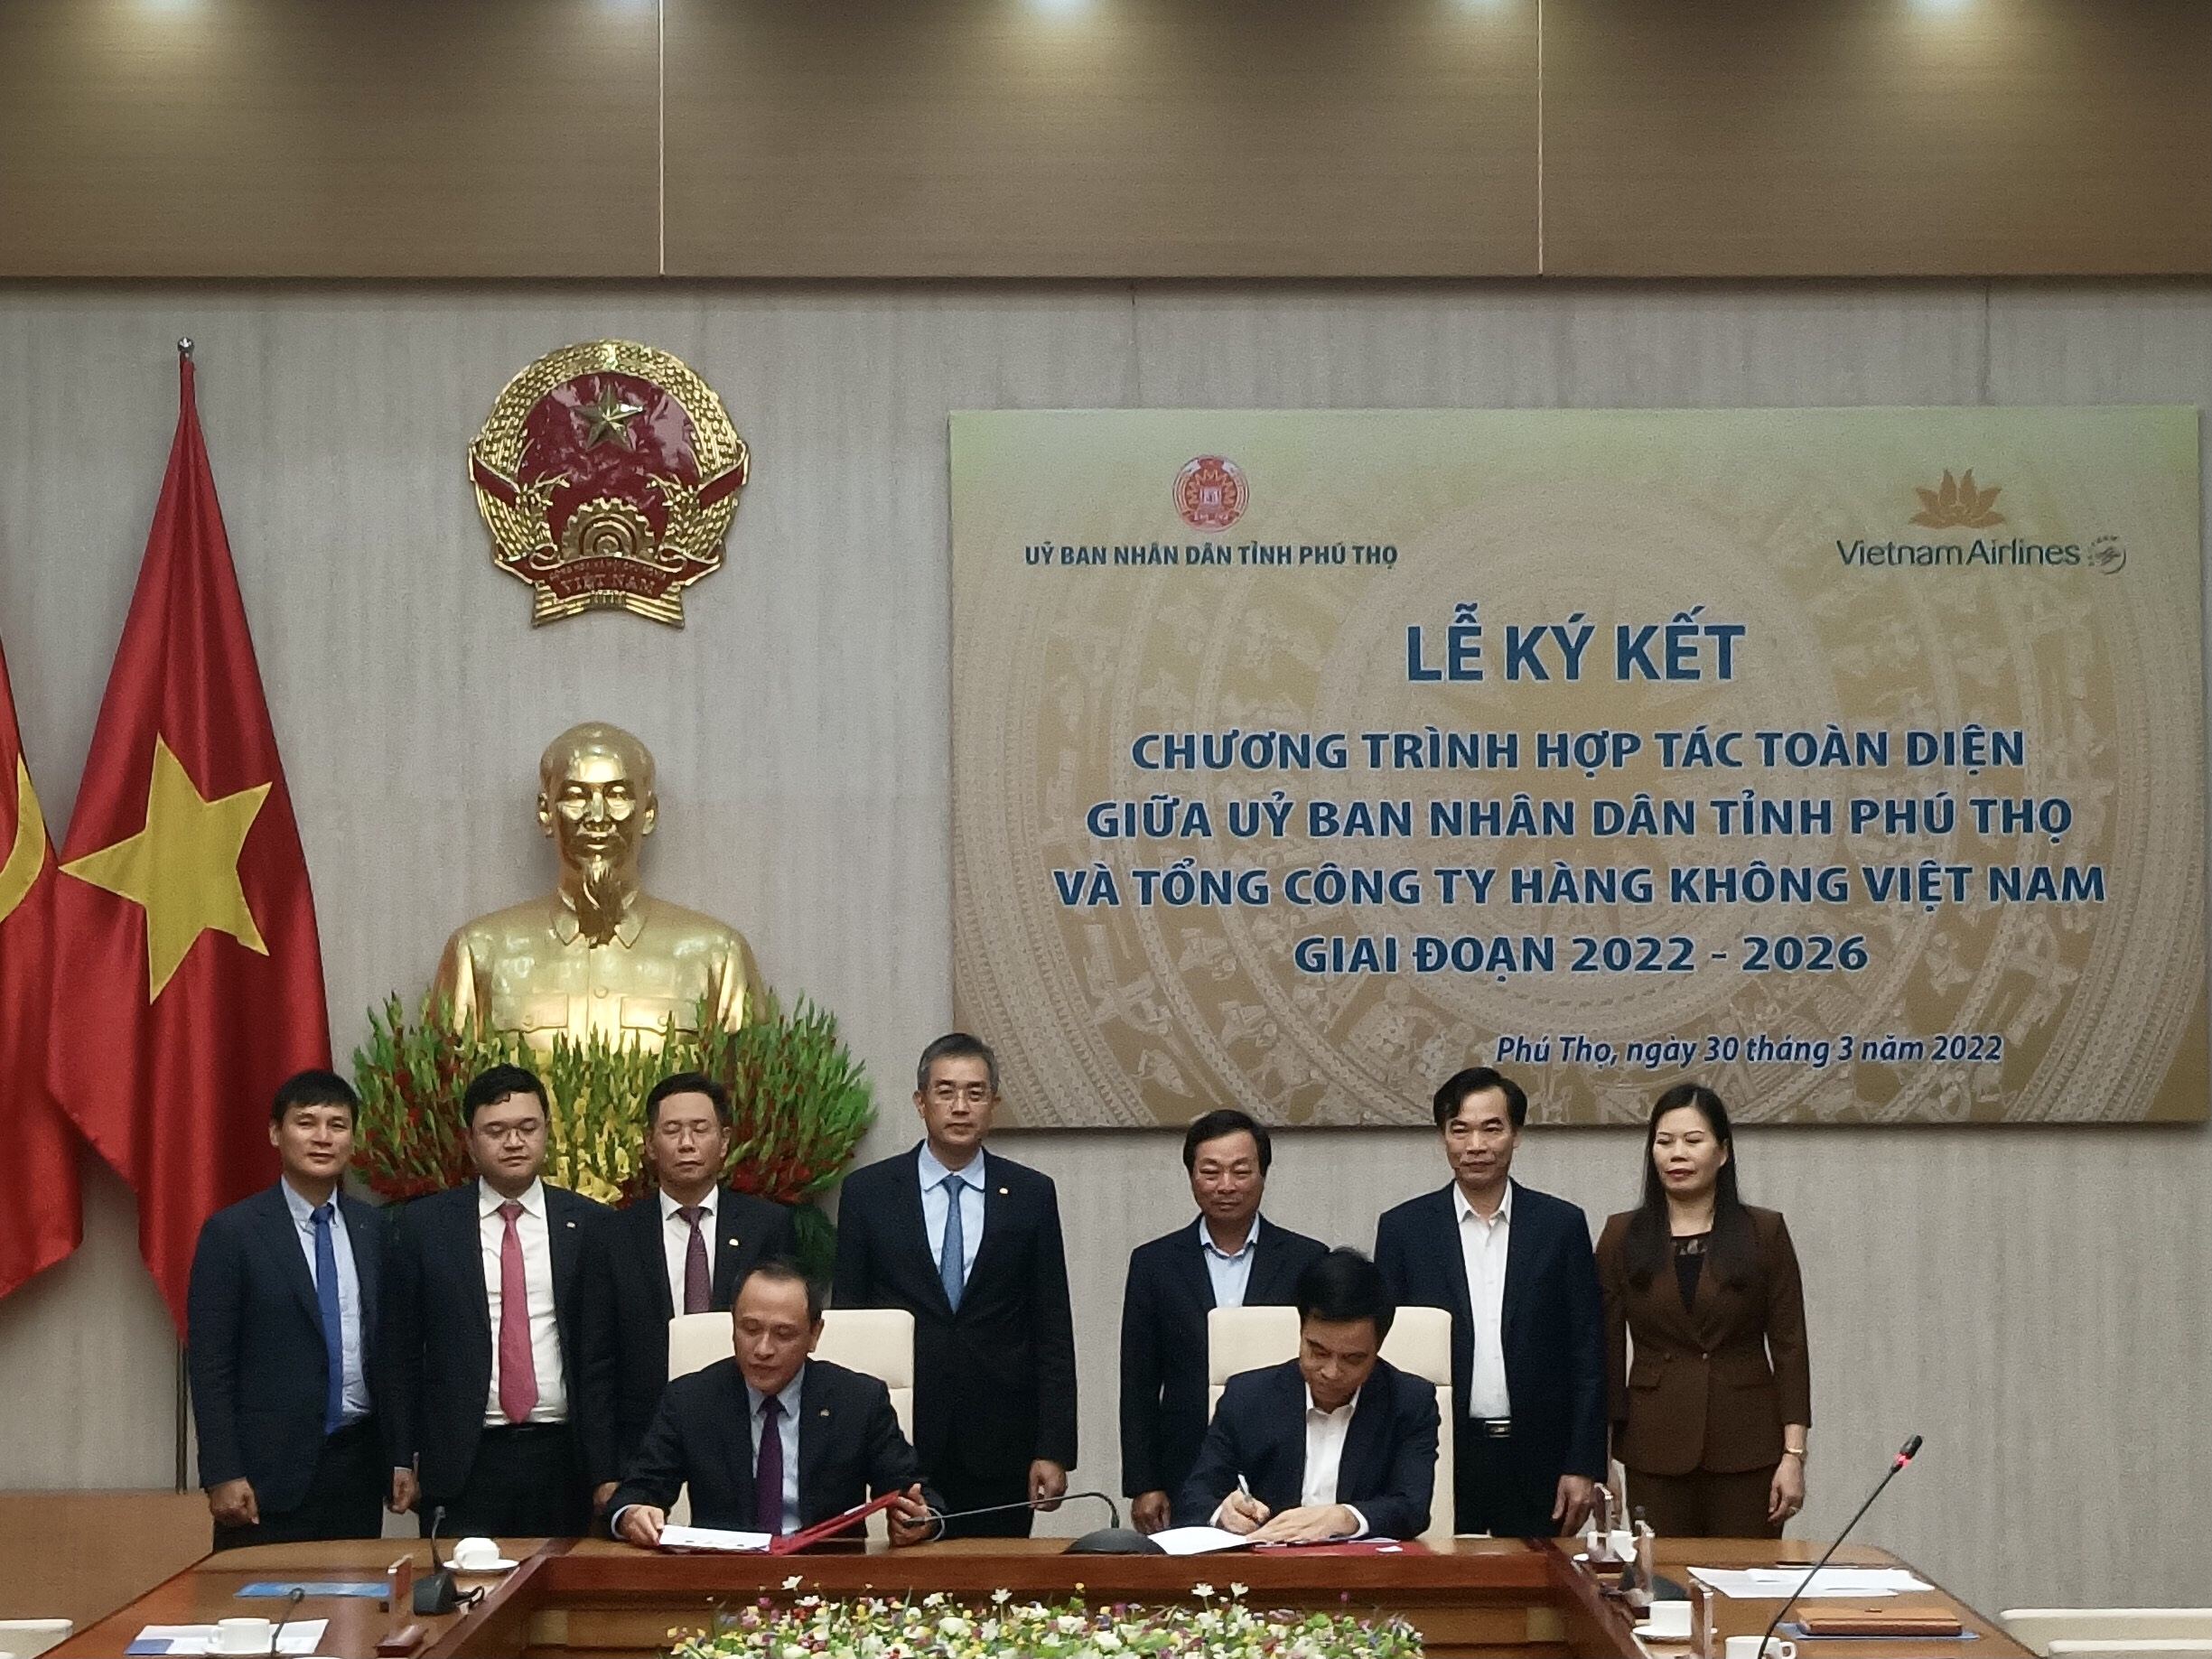 Vietnam Airlines và UBND tỉnh Phú Thọ chính thức ký kết thỏa thuận hợp tác toàn diện giai đoạn 2022 - 2026